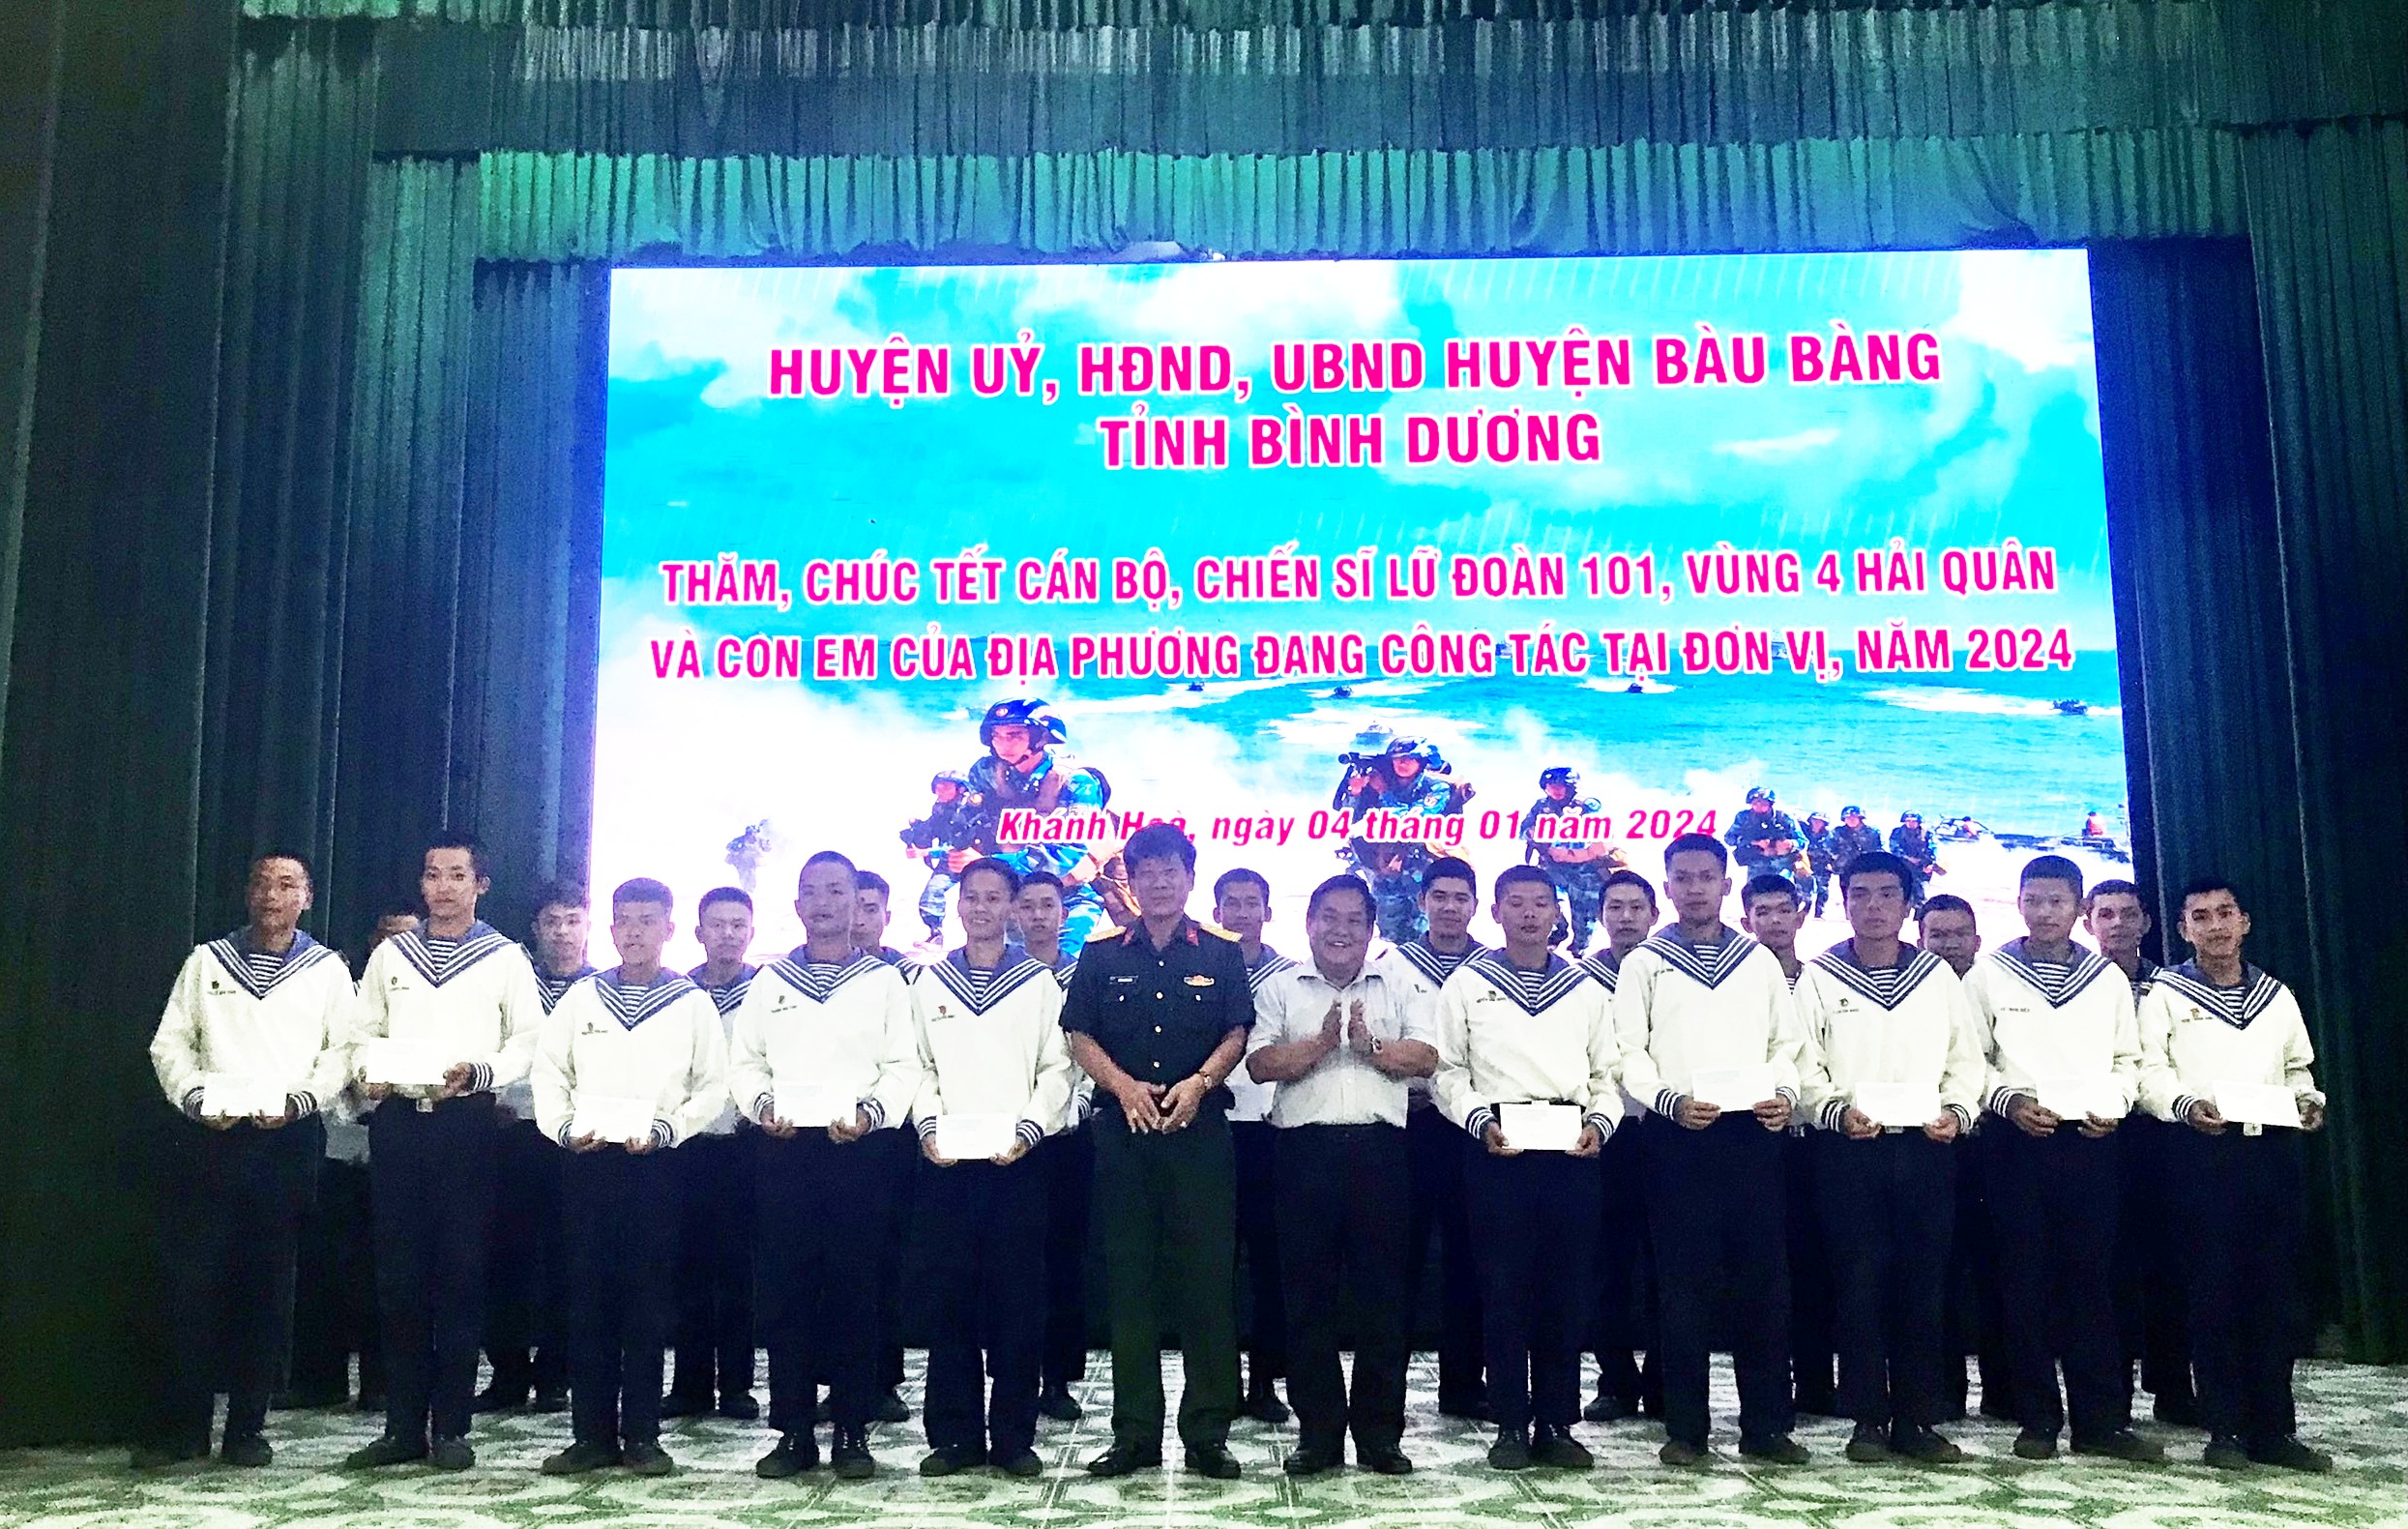 Lãnh đạo huyện Bàu Bàng: Thăm, chúc tết cán bộ, chiến sĩ Vùng 4 Hải quân